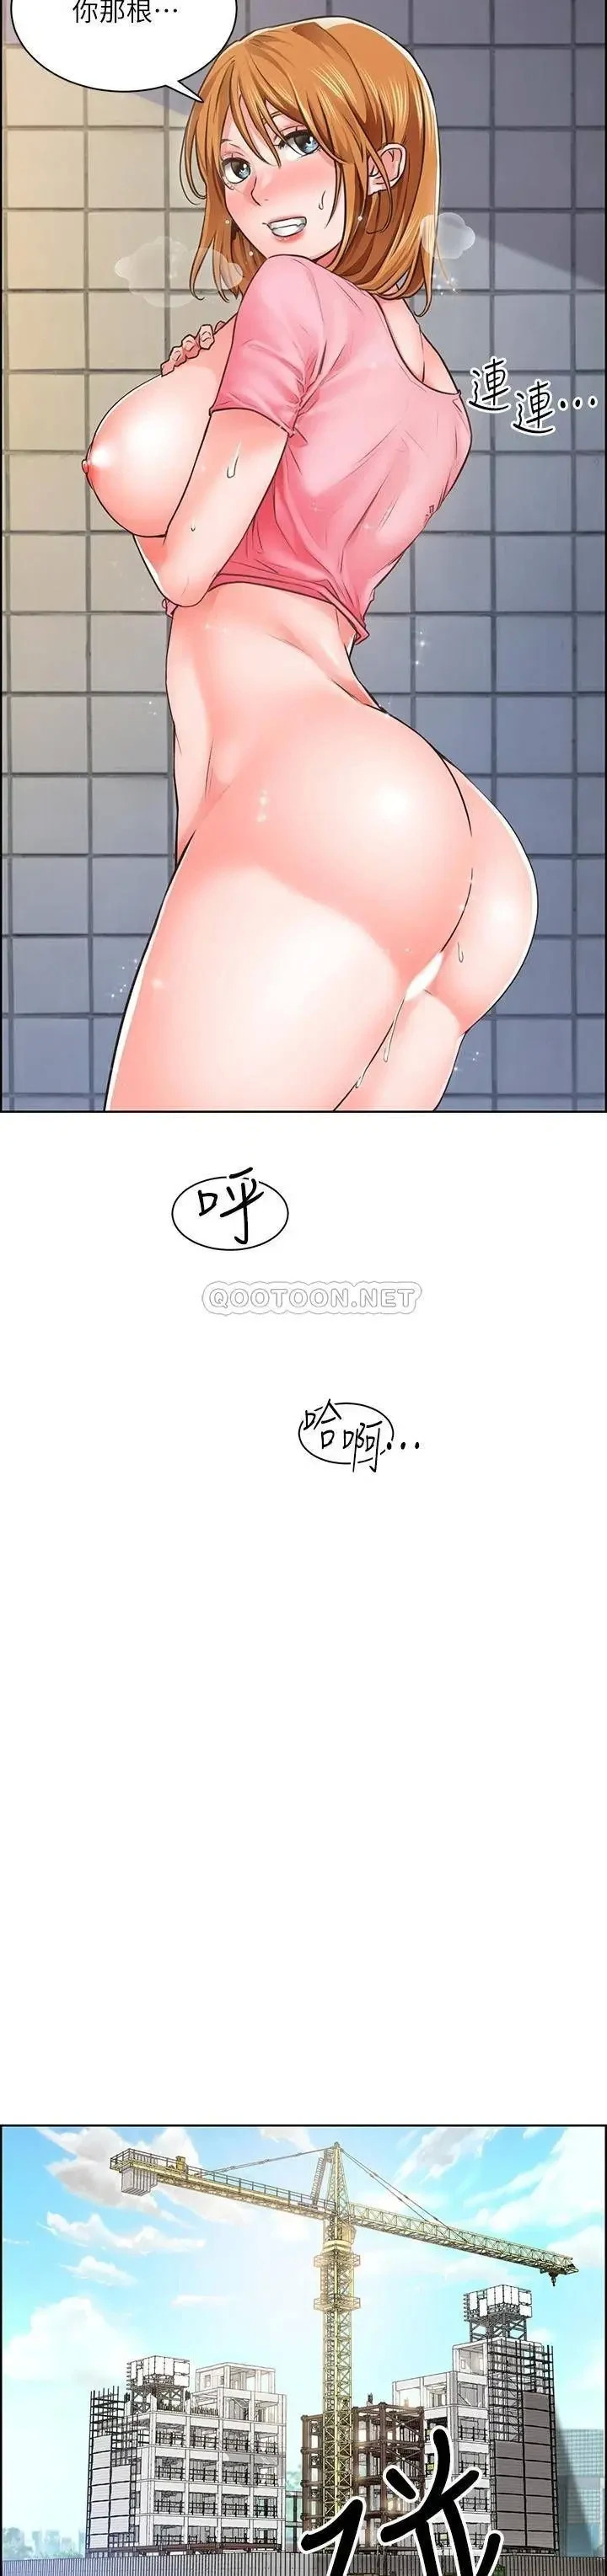 《诚徵粗工》漫画 第3话 青春男女的乾柴烈火